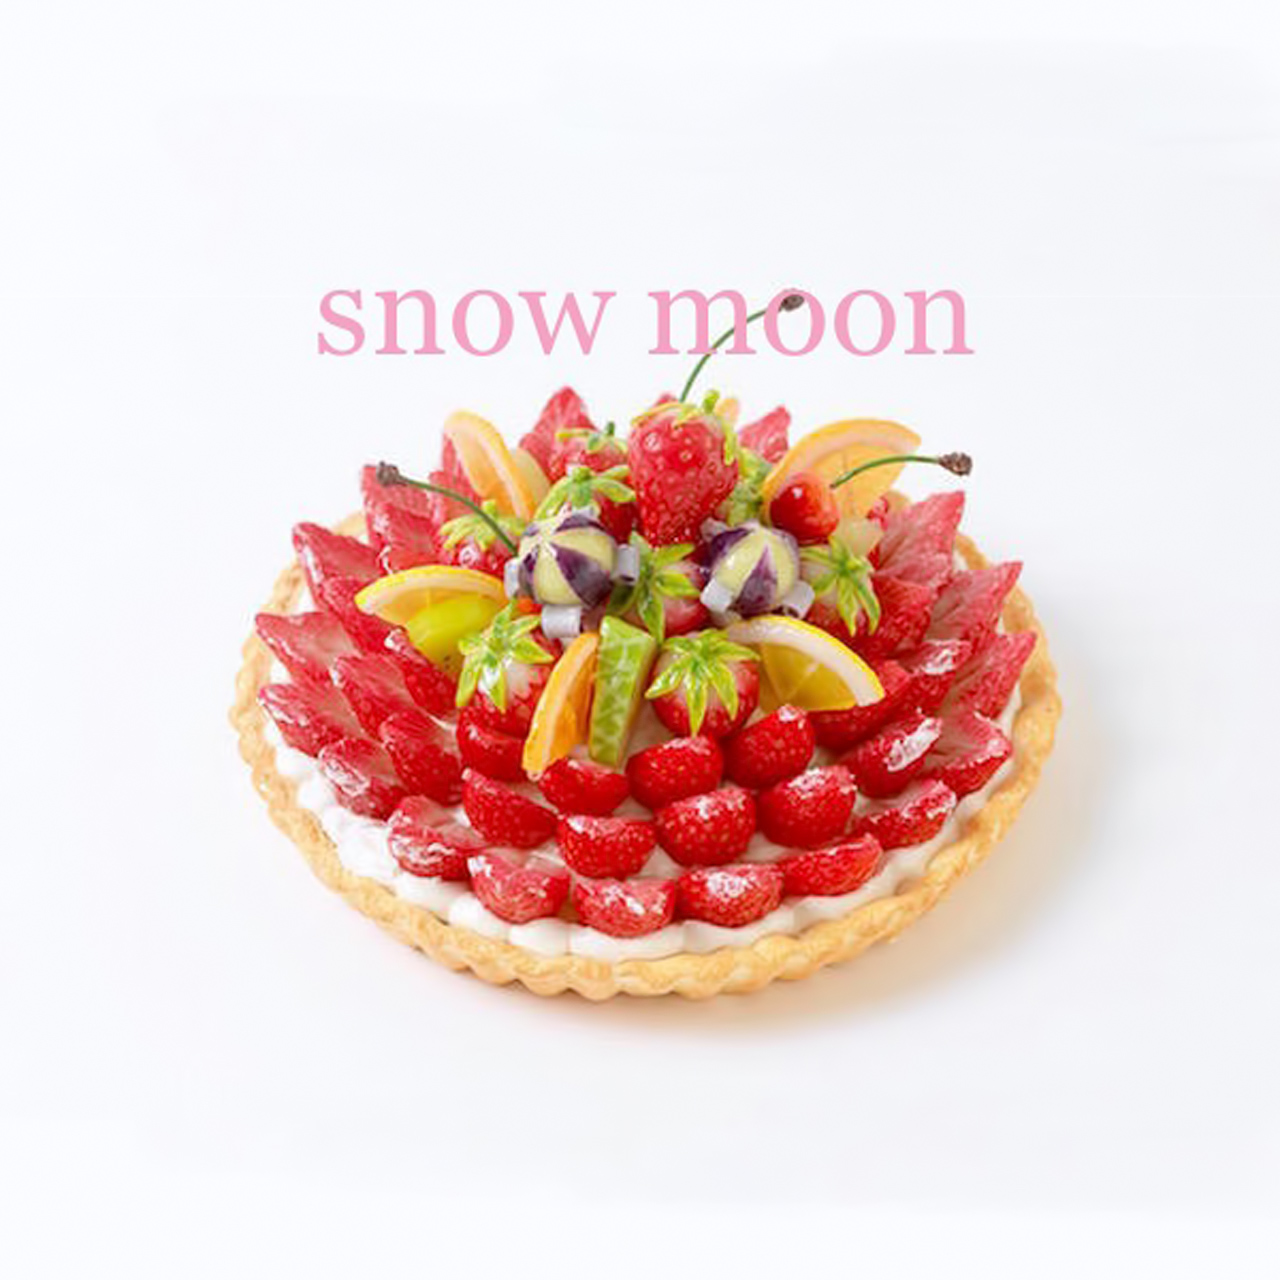 snow moon - スノームーン